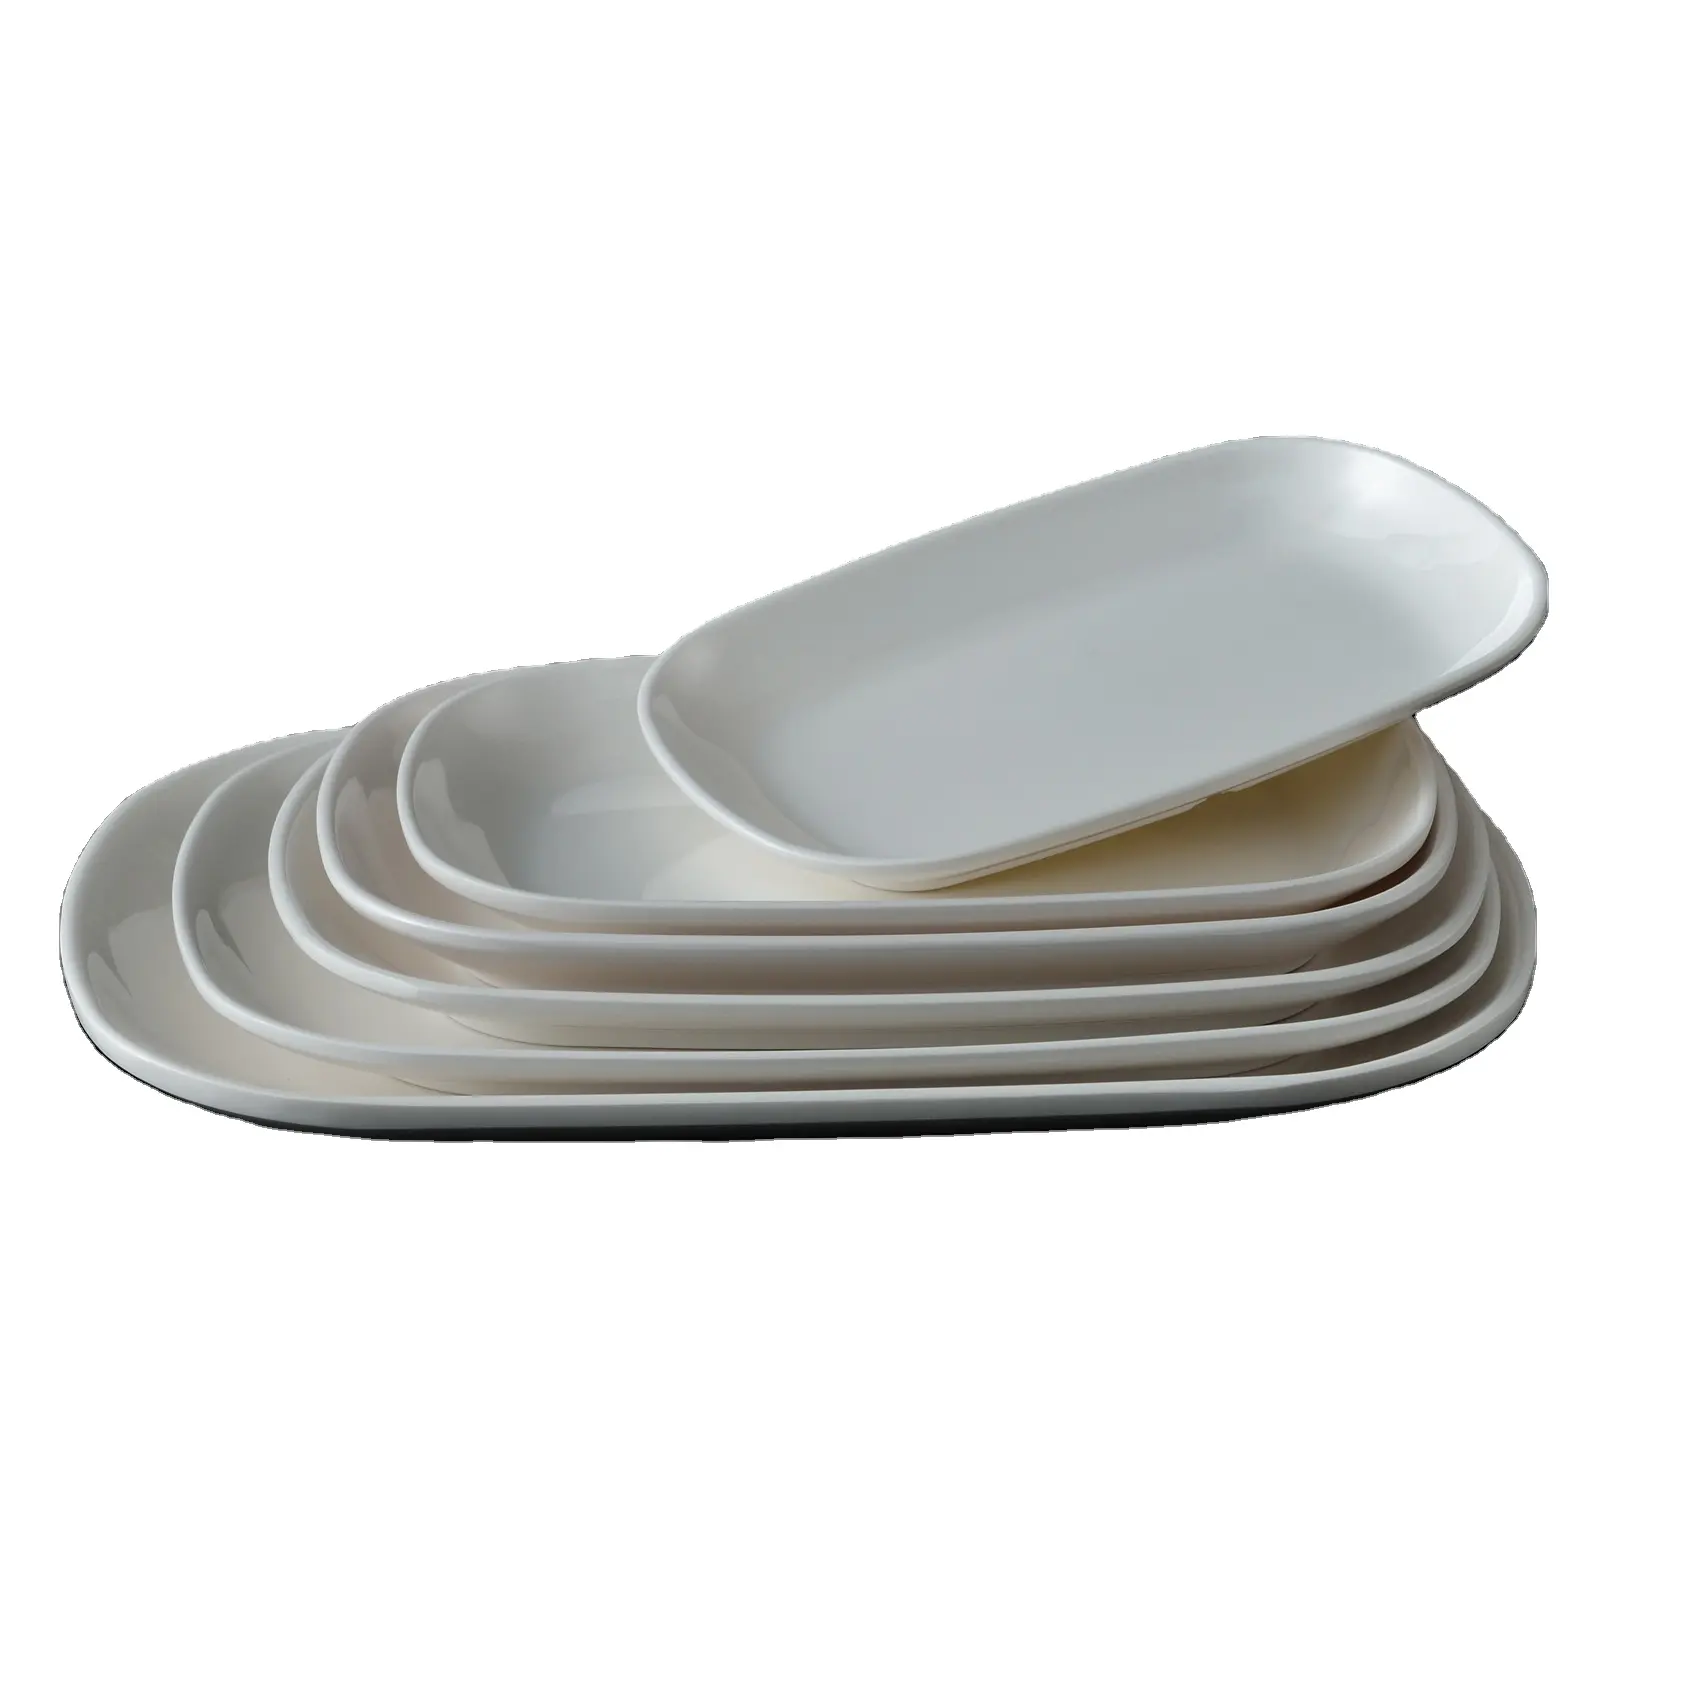 Wholesale restaurant dinner rectangle plates melamine custom plate